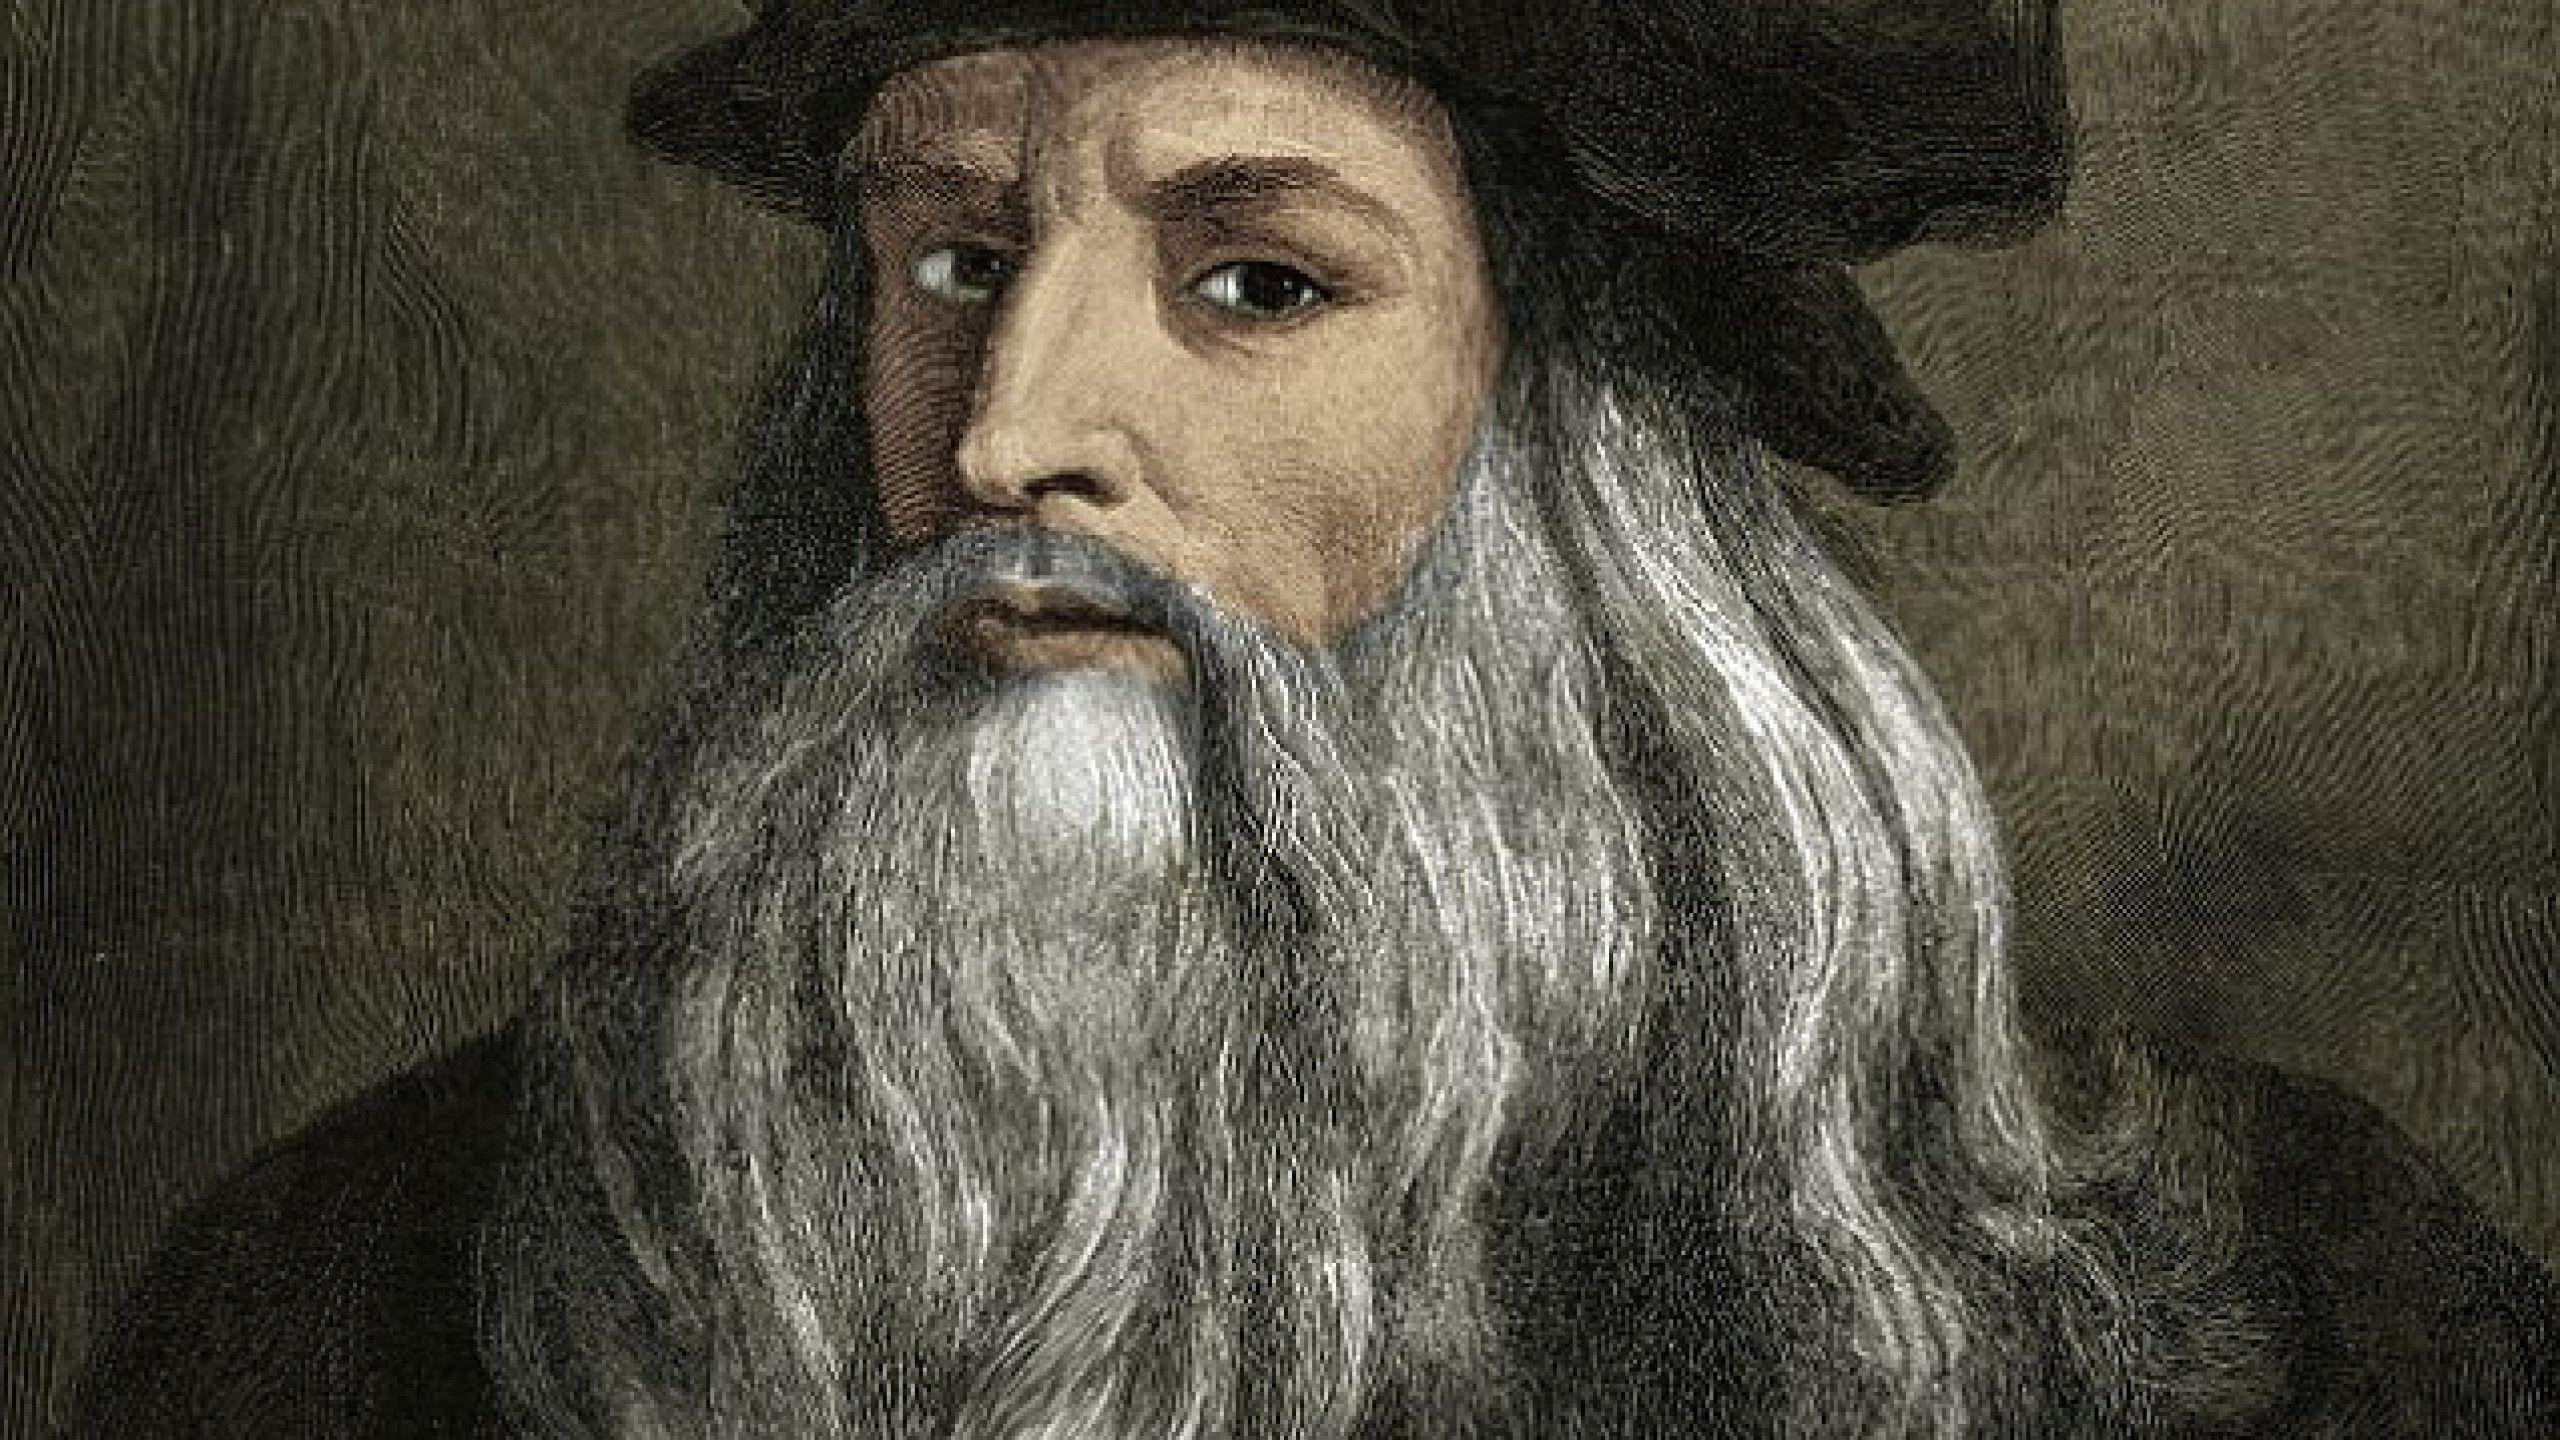 لئوناردو داوینچی چهره‌ای برجسته و روشن فکر و یکی از هنرمندان پیشرو دوره رنسانس